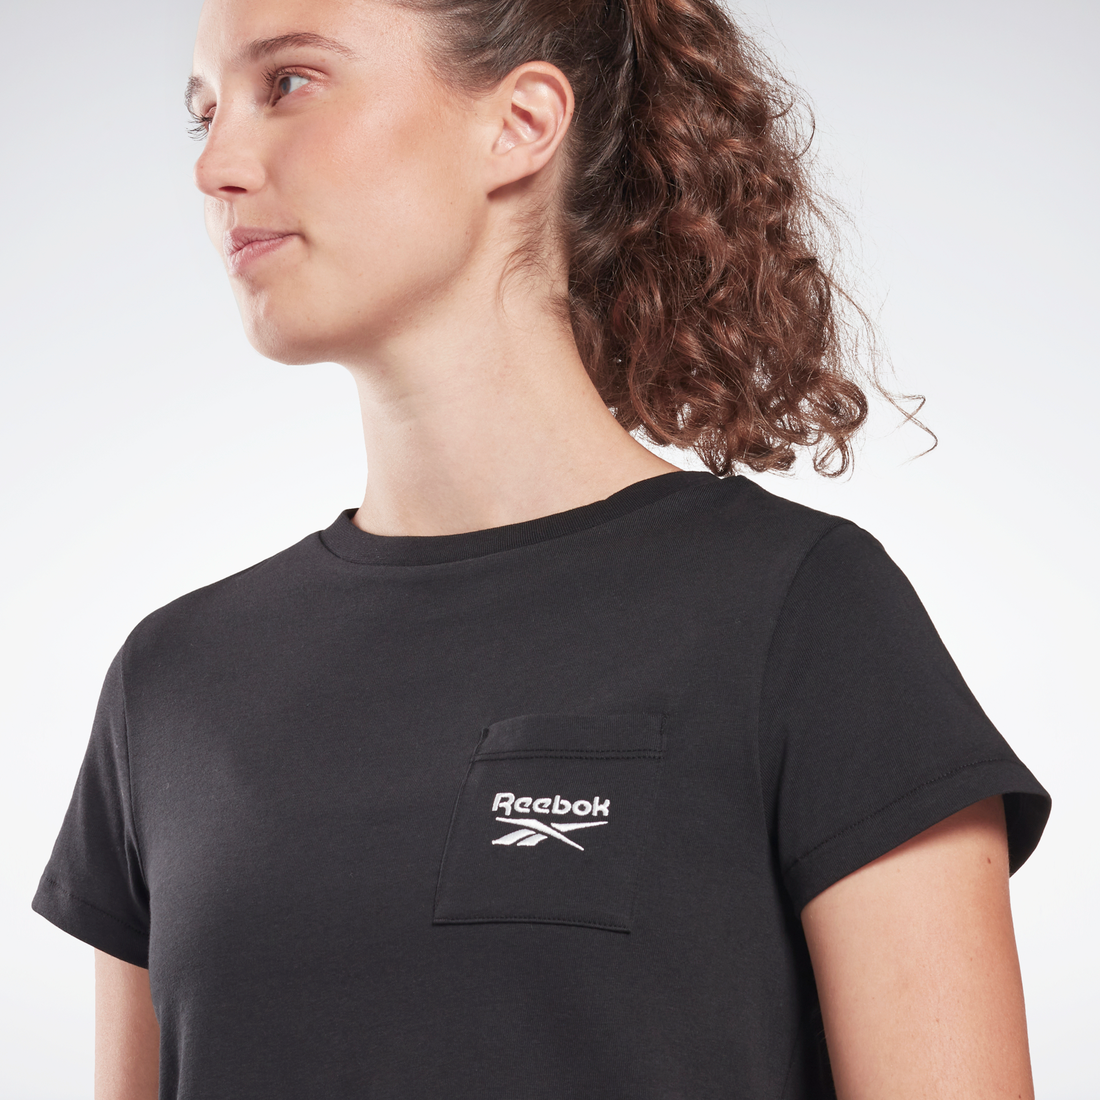 アイデンティティ ポケット Tシャツ / Identity Pocket T-Shirt